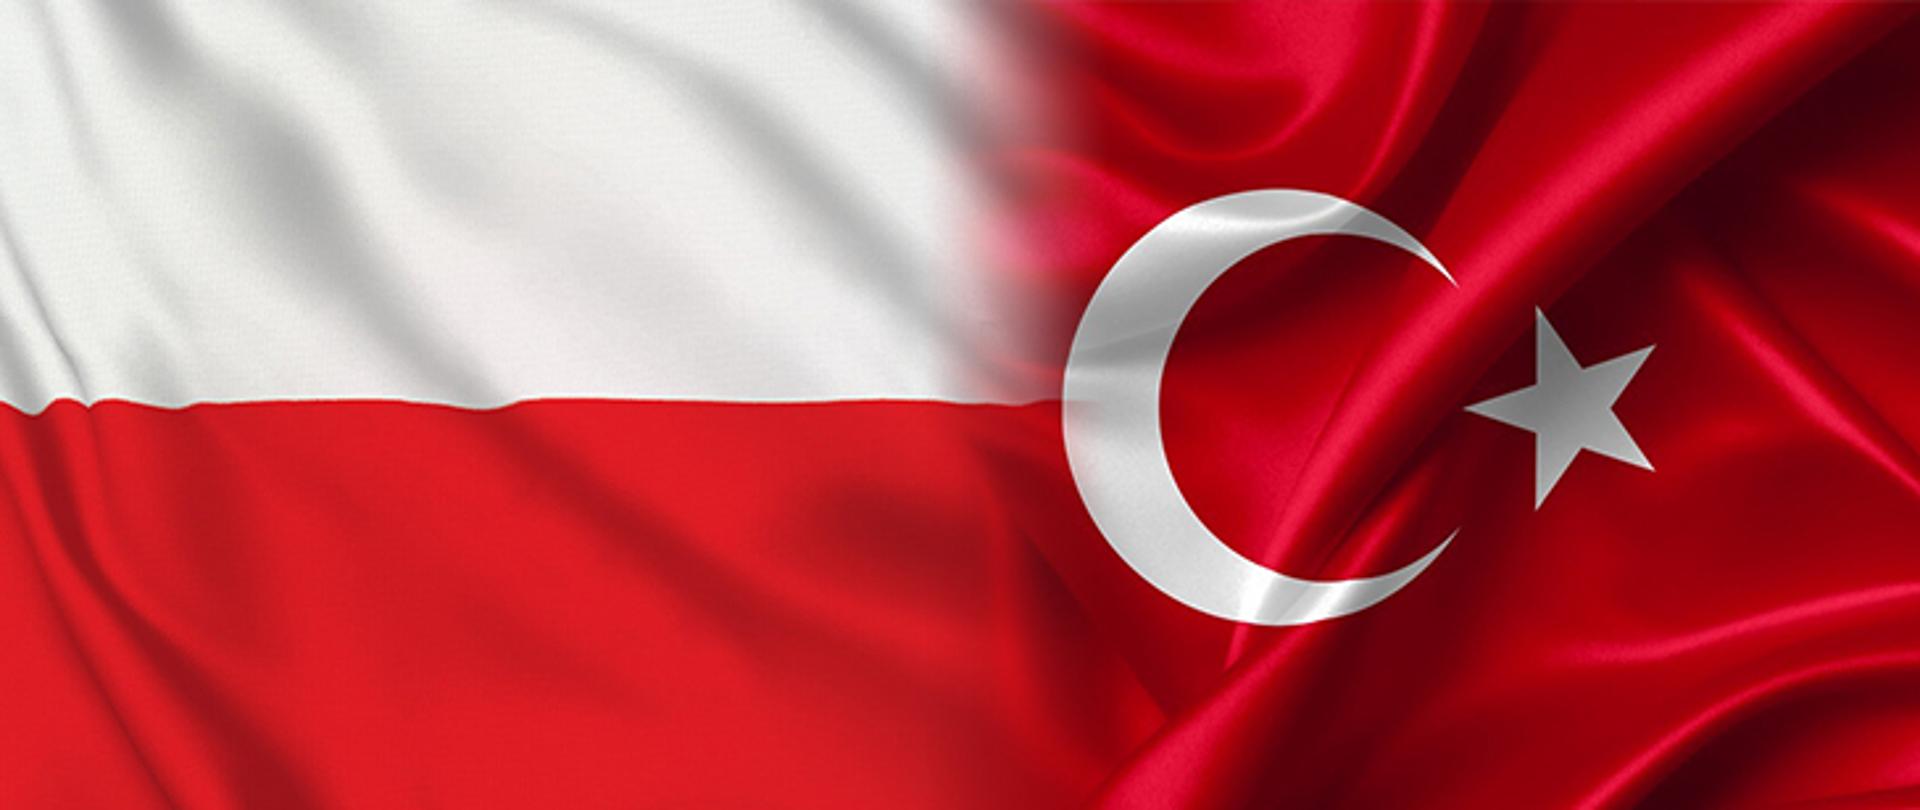 Porozumienie Polska - Turcja